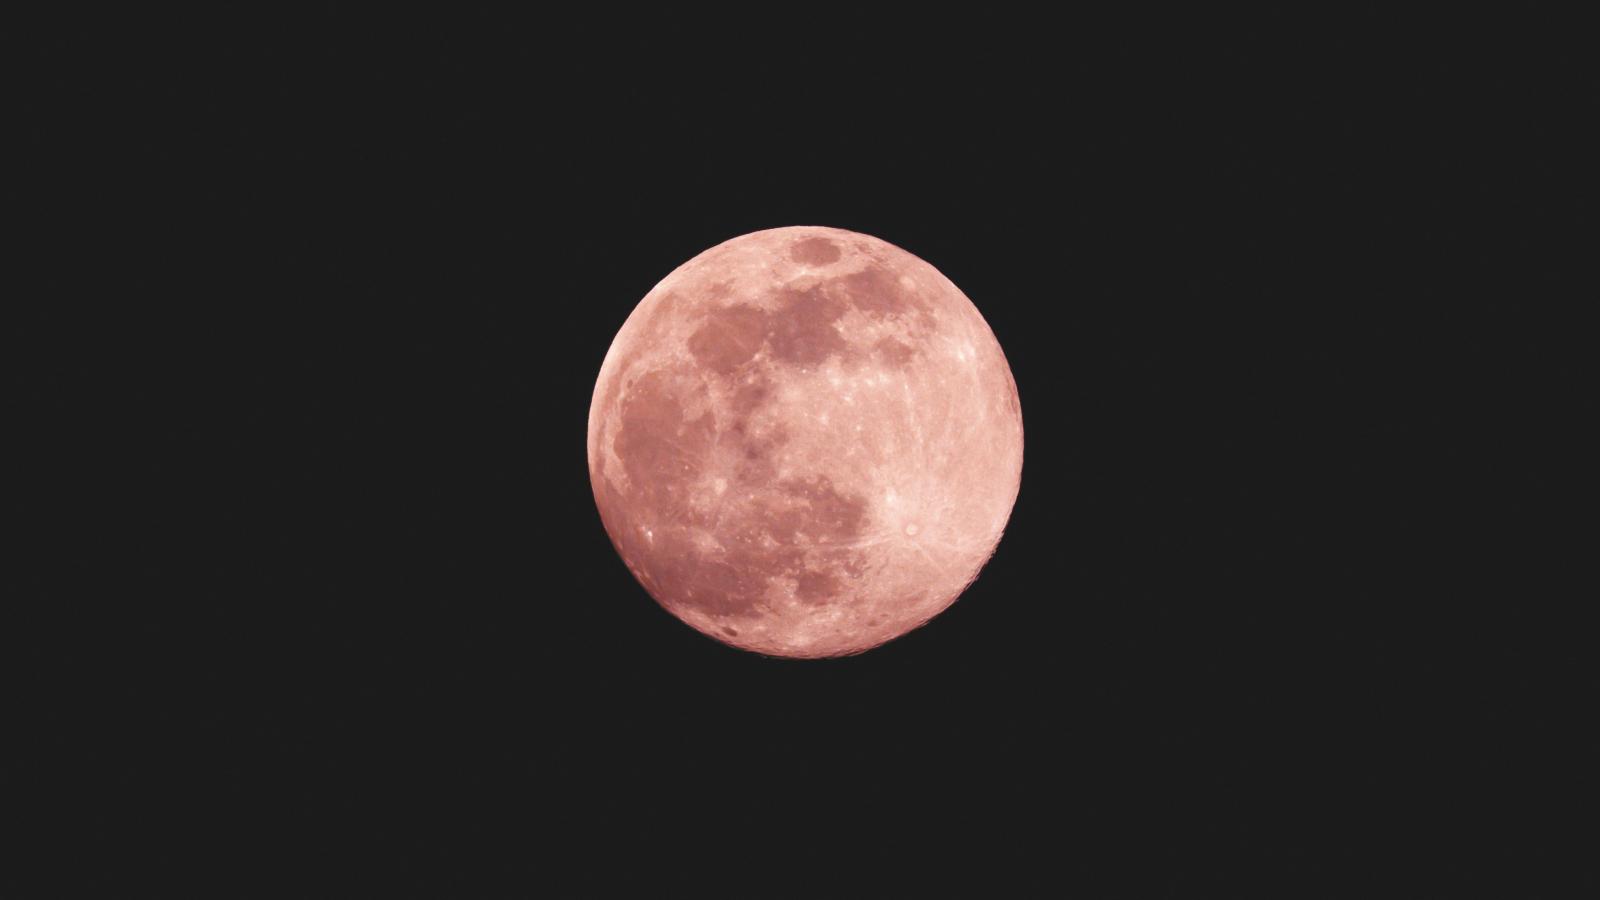 Tout ce que vous devez savoir sur la Pleine Lune rose de ce 23 avril